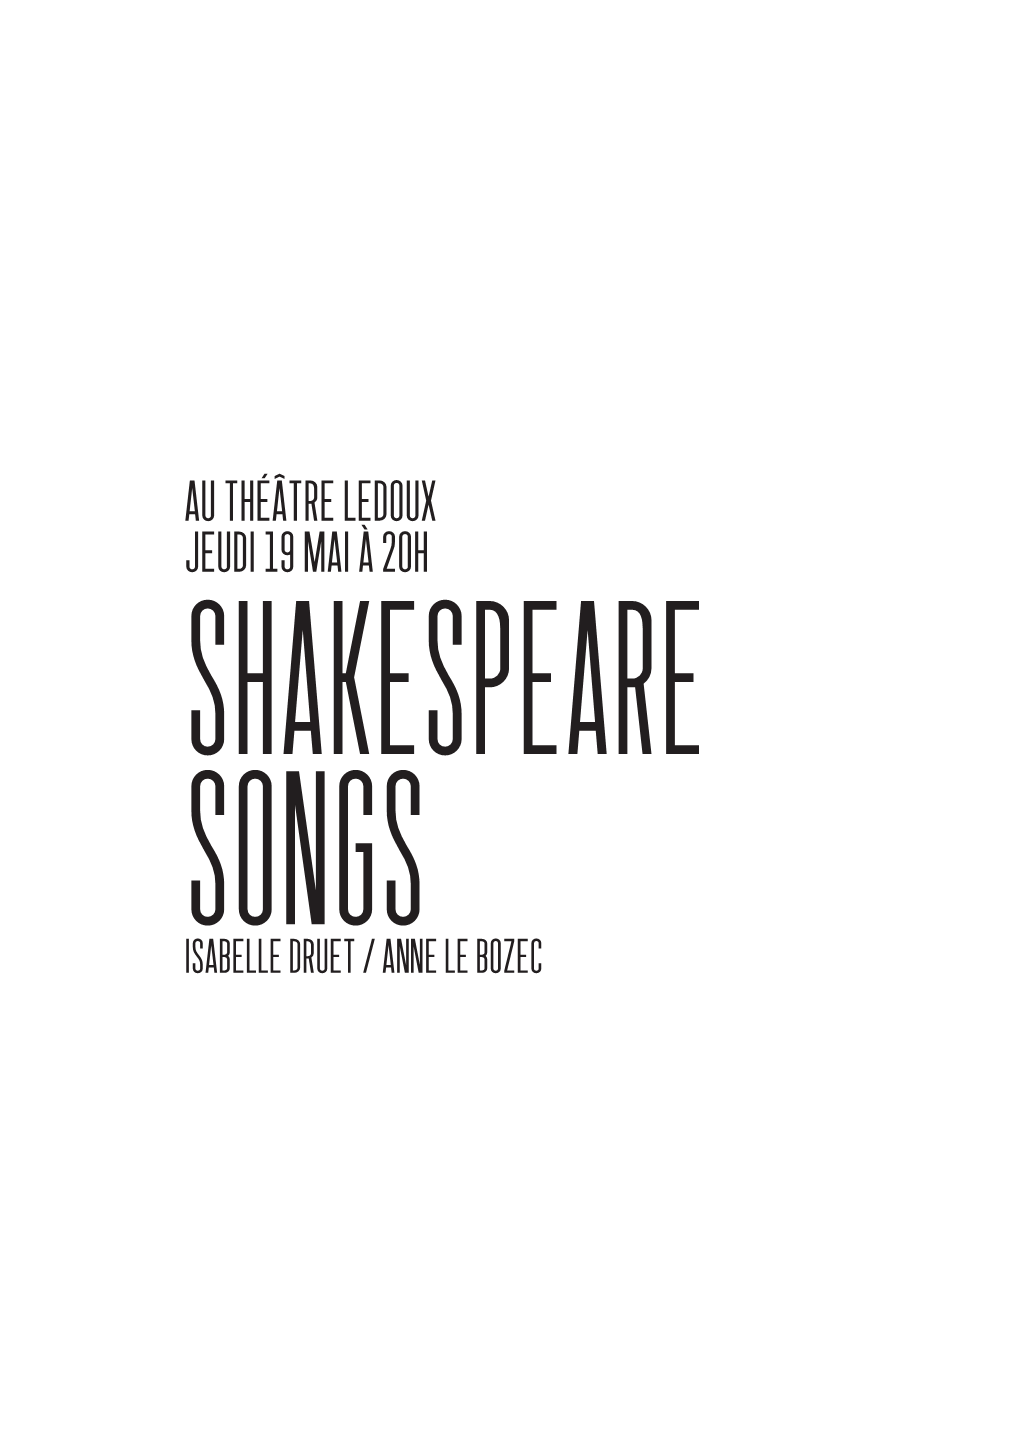 Au Théâtre Ledoux Jeudi 19 Mai À 20H Shakespeare Songs Isabelle Druet / Anne Le Bozec Shakespeare Songs